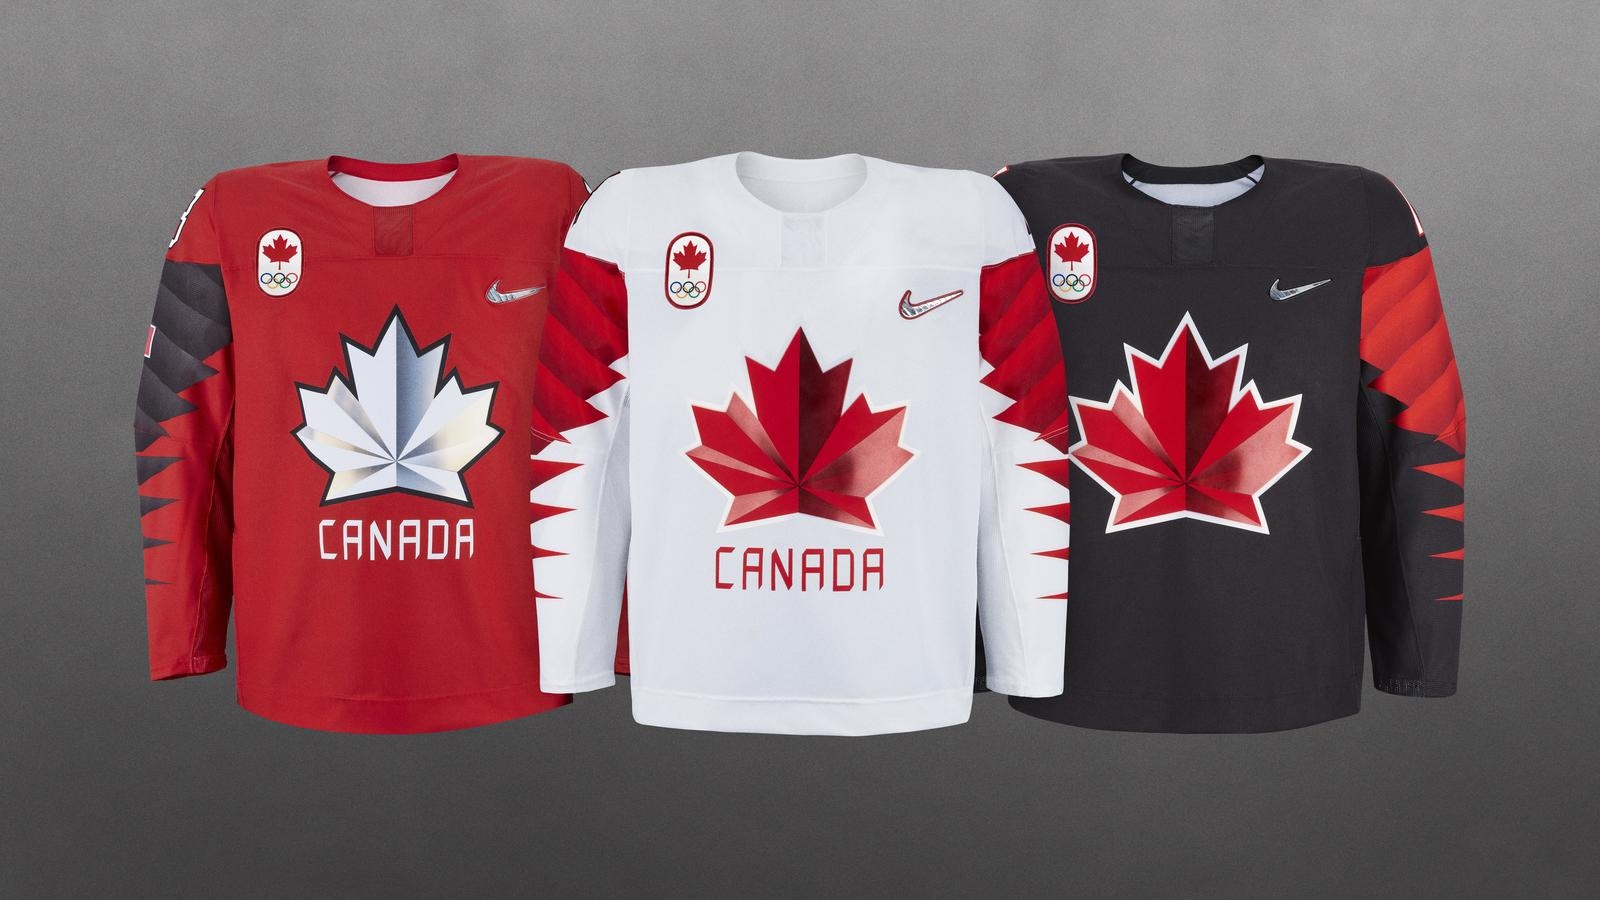 2018 olympic hockey jerseys